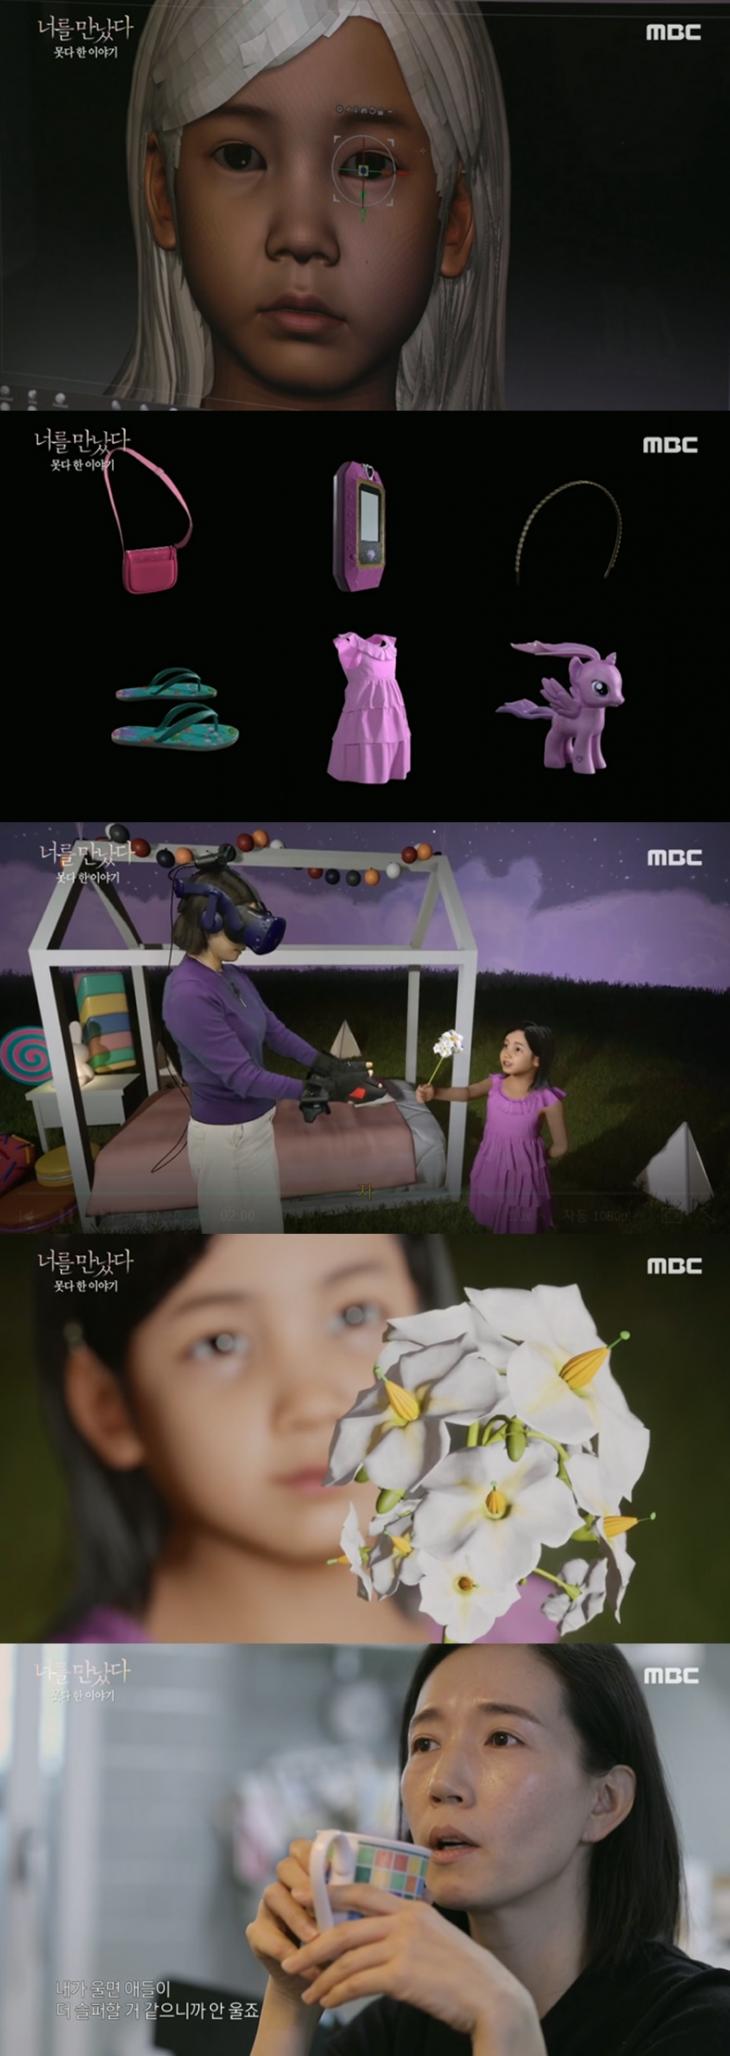 MBC 특집 VR 휴먼다큐멘터리 ‘너를 만났다’